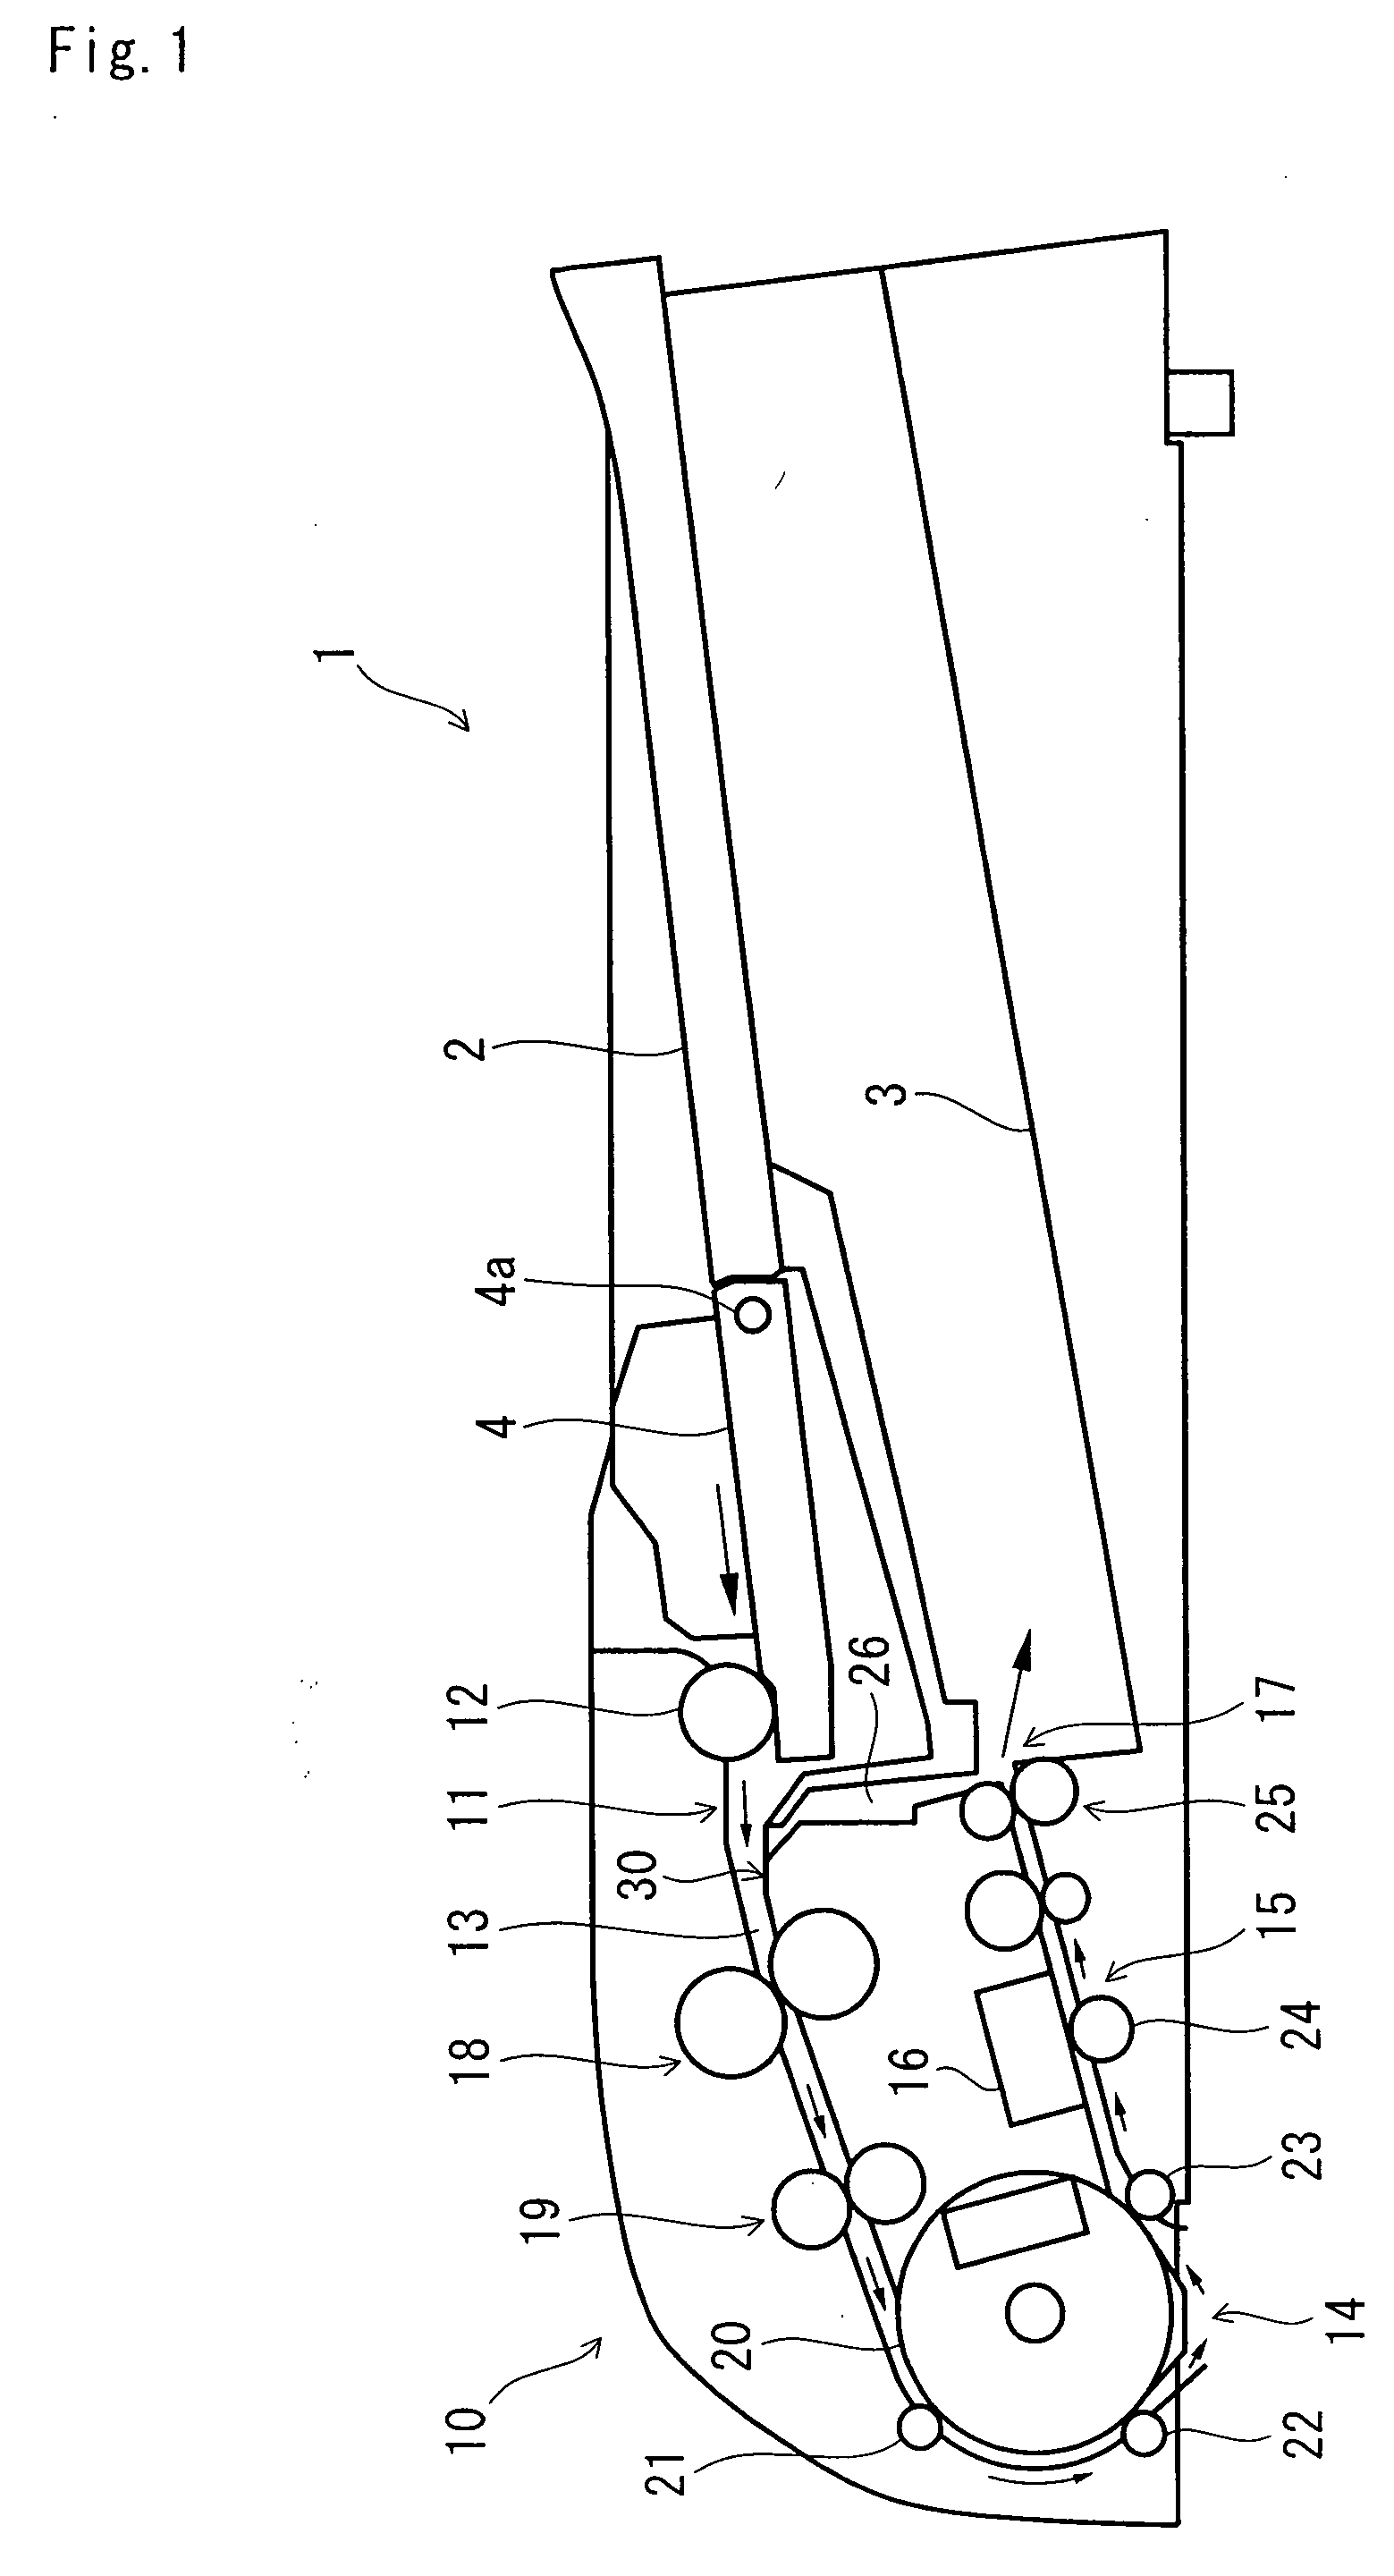 Document conveying apparatus